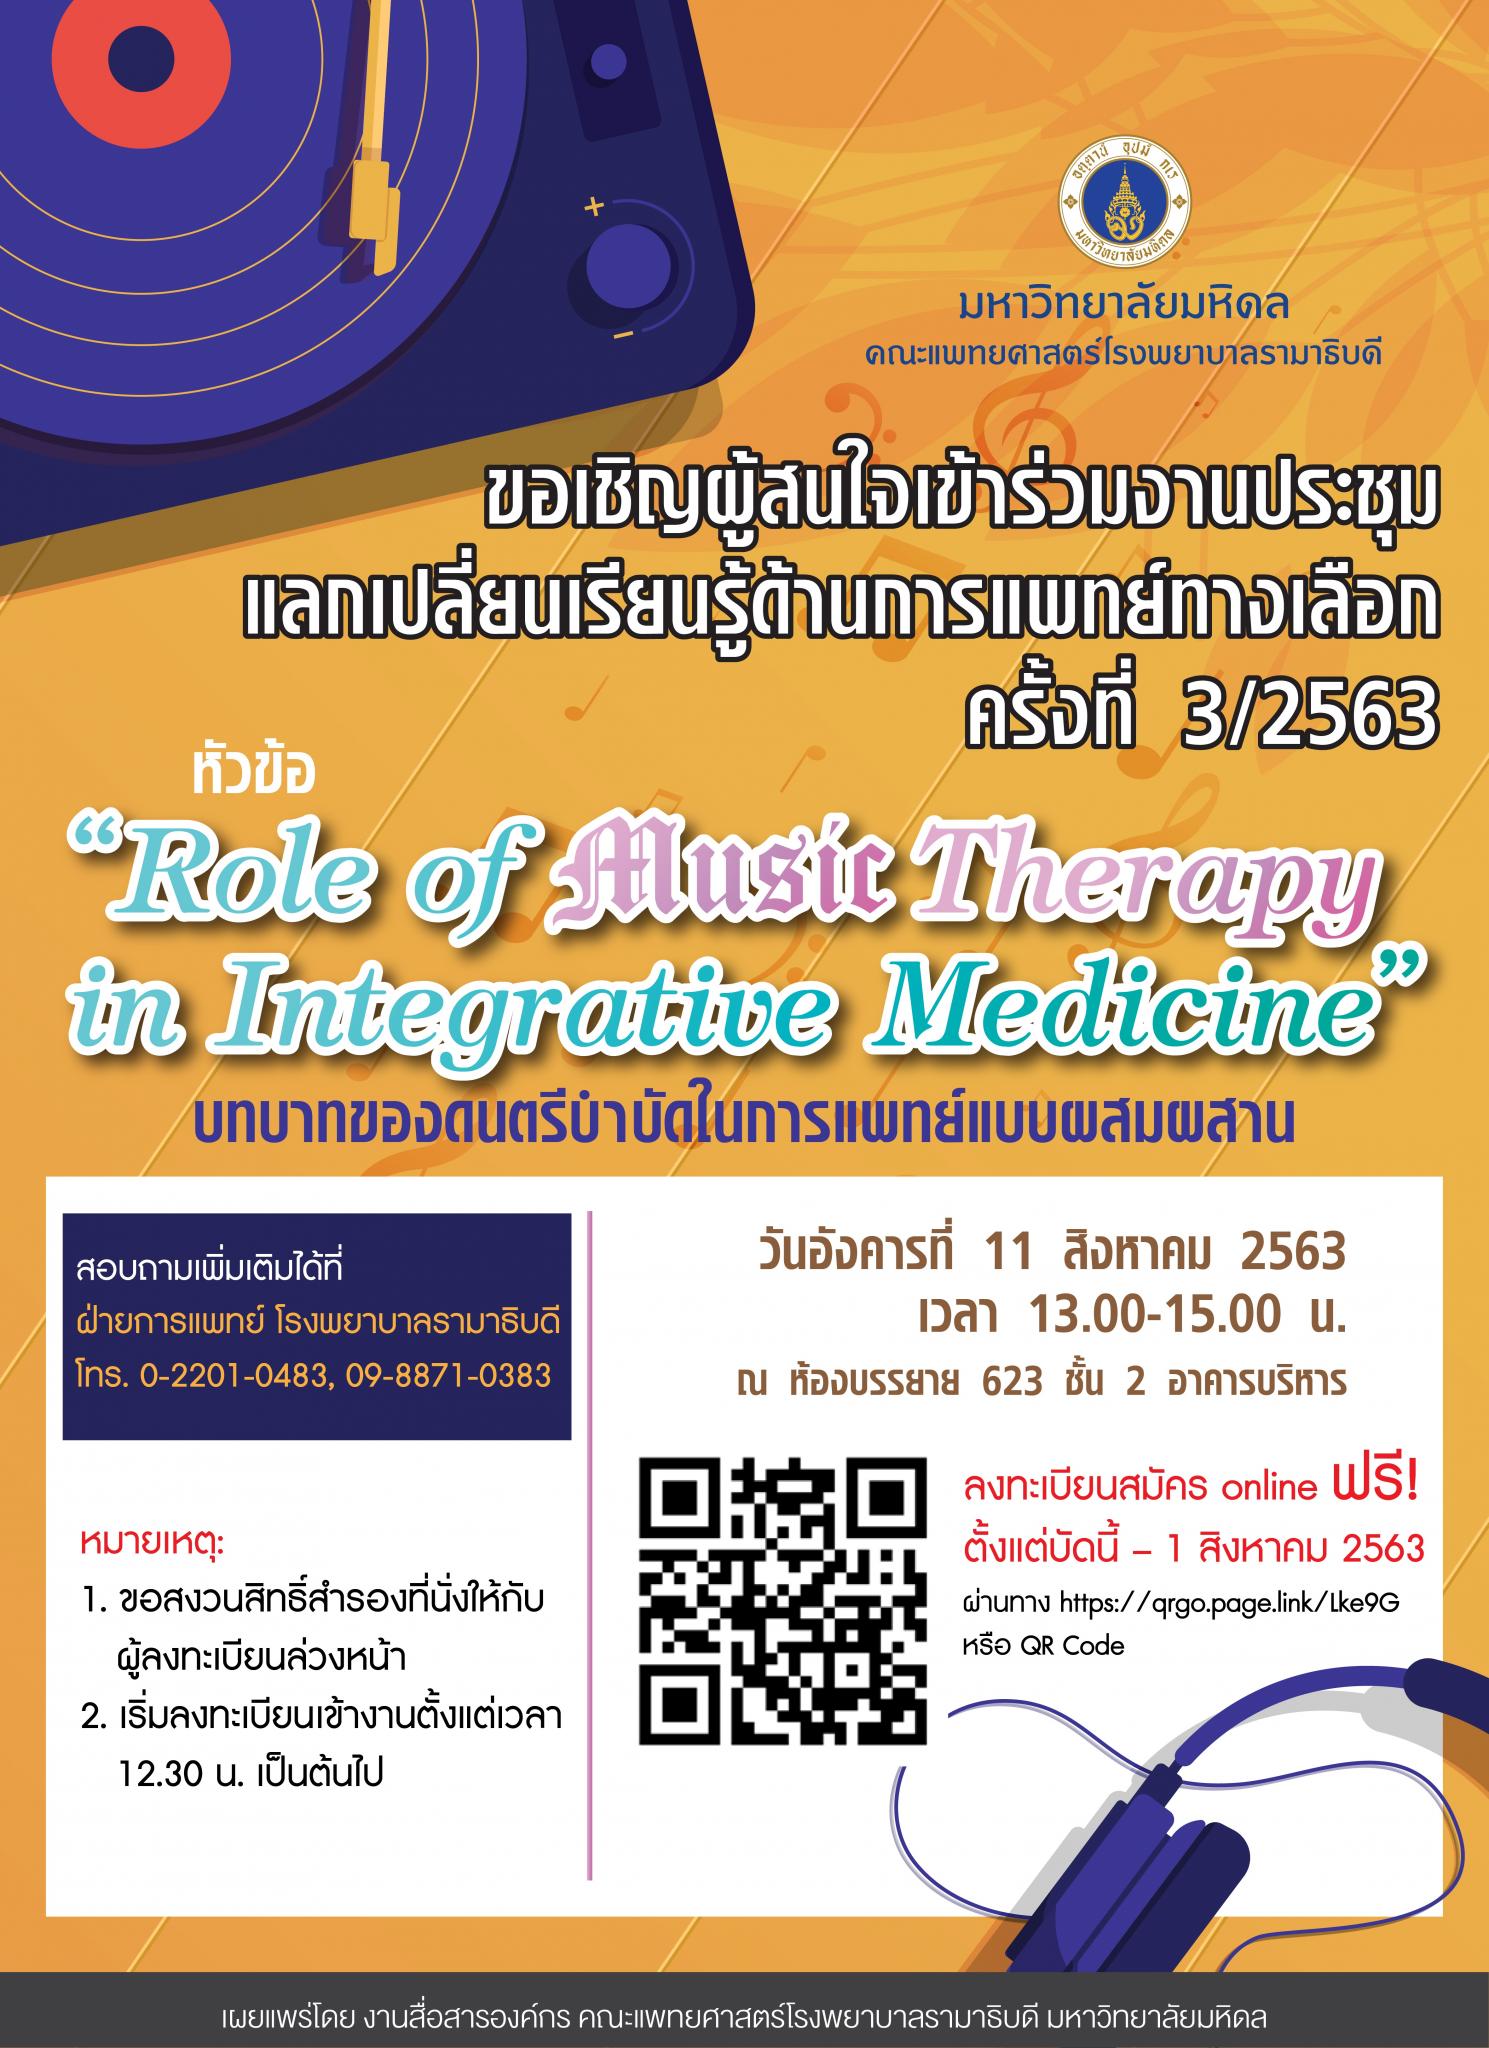 ขอเชิญร่วมประชุม “Role of Music Therapy in Integrative Medicine” บทบาทของดนตรีบำบัดในการแพทย์แบบผสมผสาน